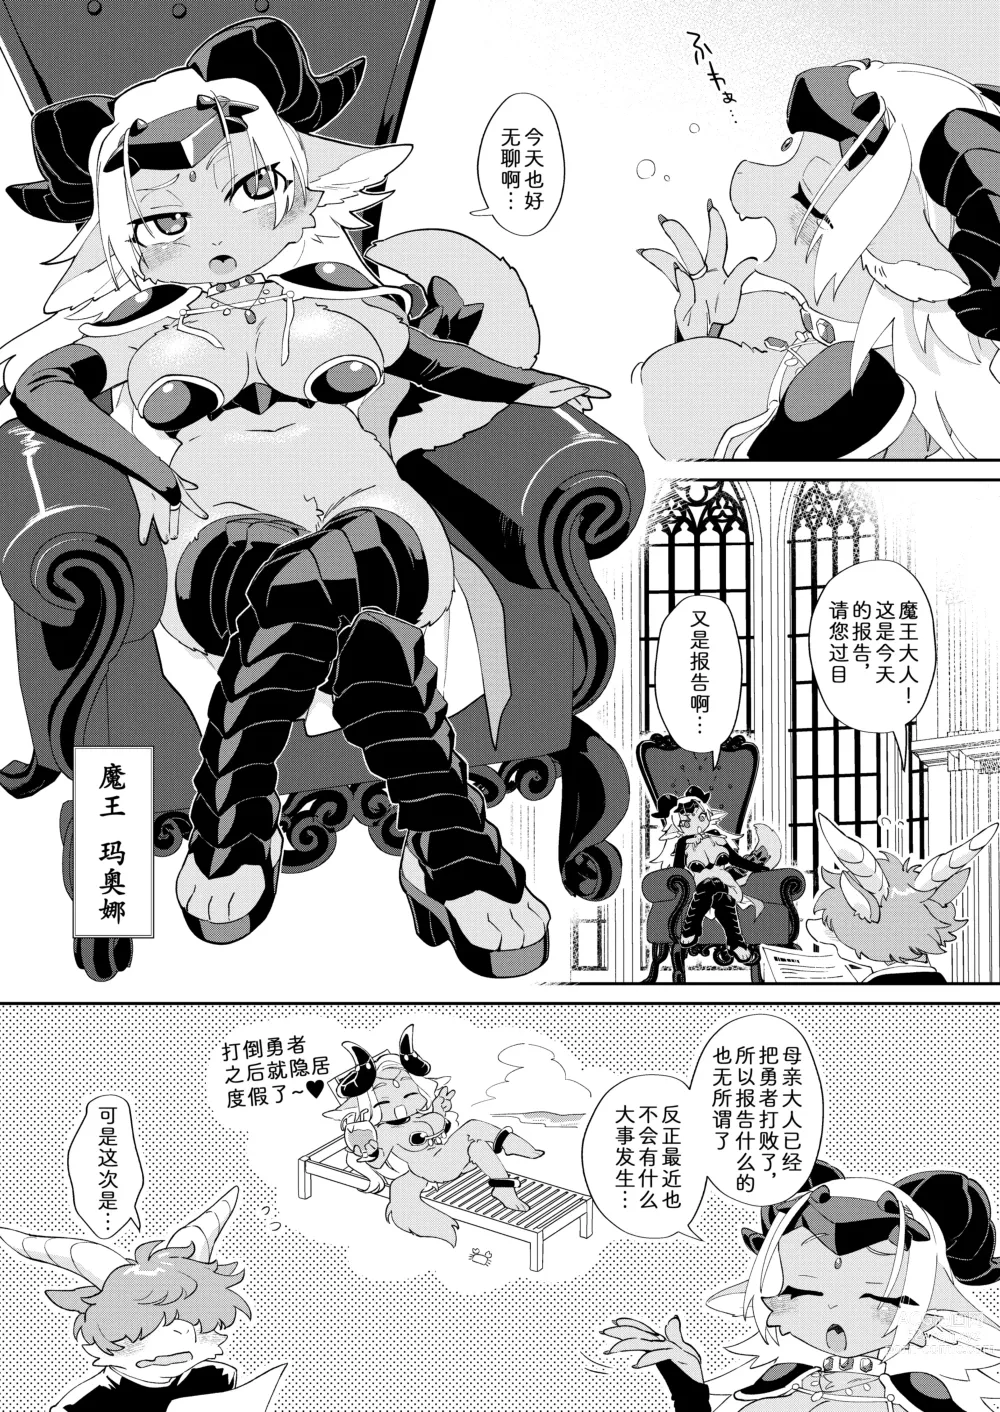 Page 4 of doujinshi 因为是魔王所以说色情迷宫什么的当然随便通关了